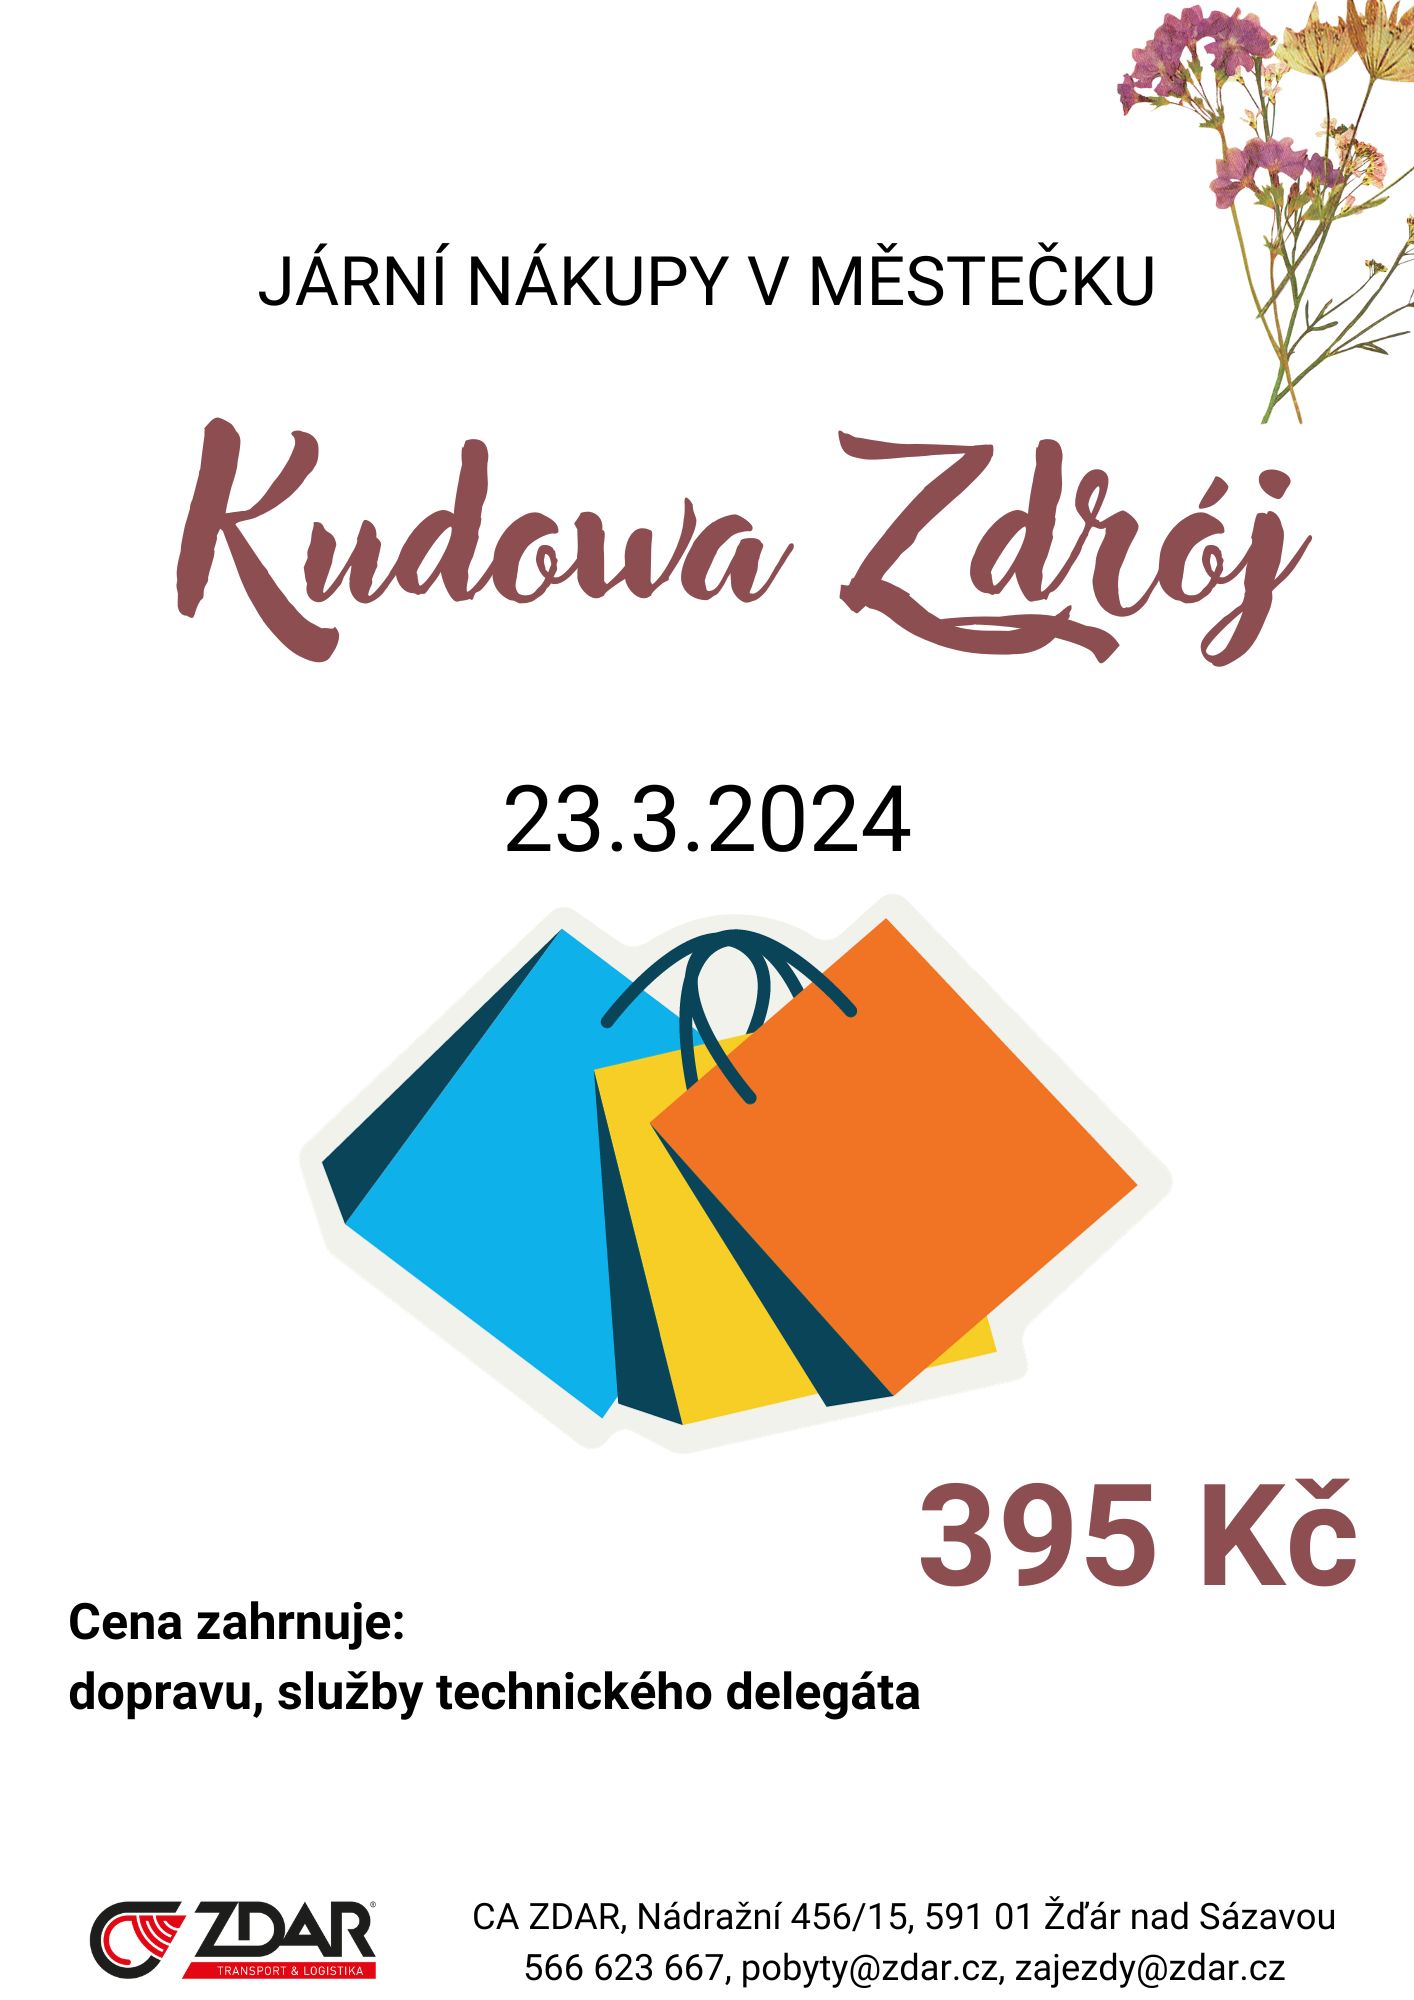 123035-Kudowa-Zdroj-23